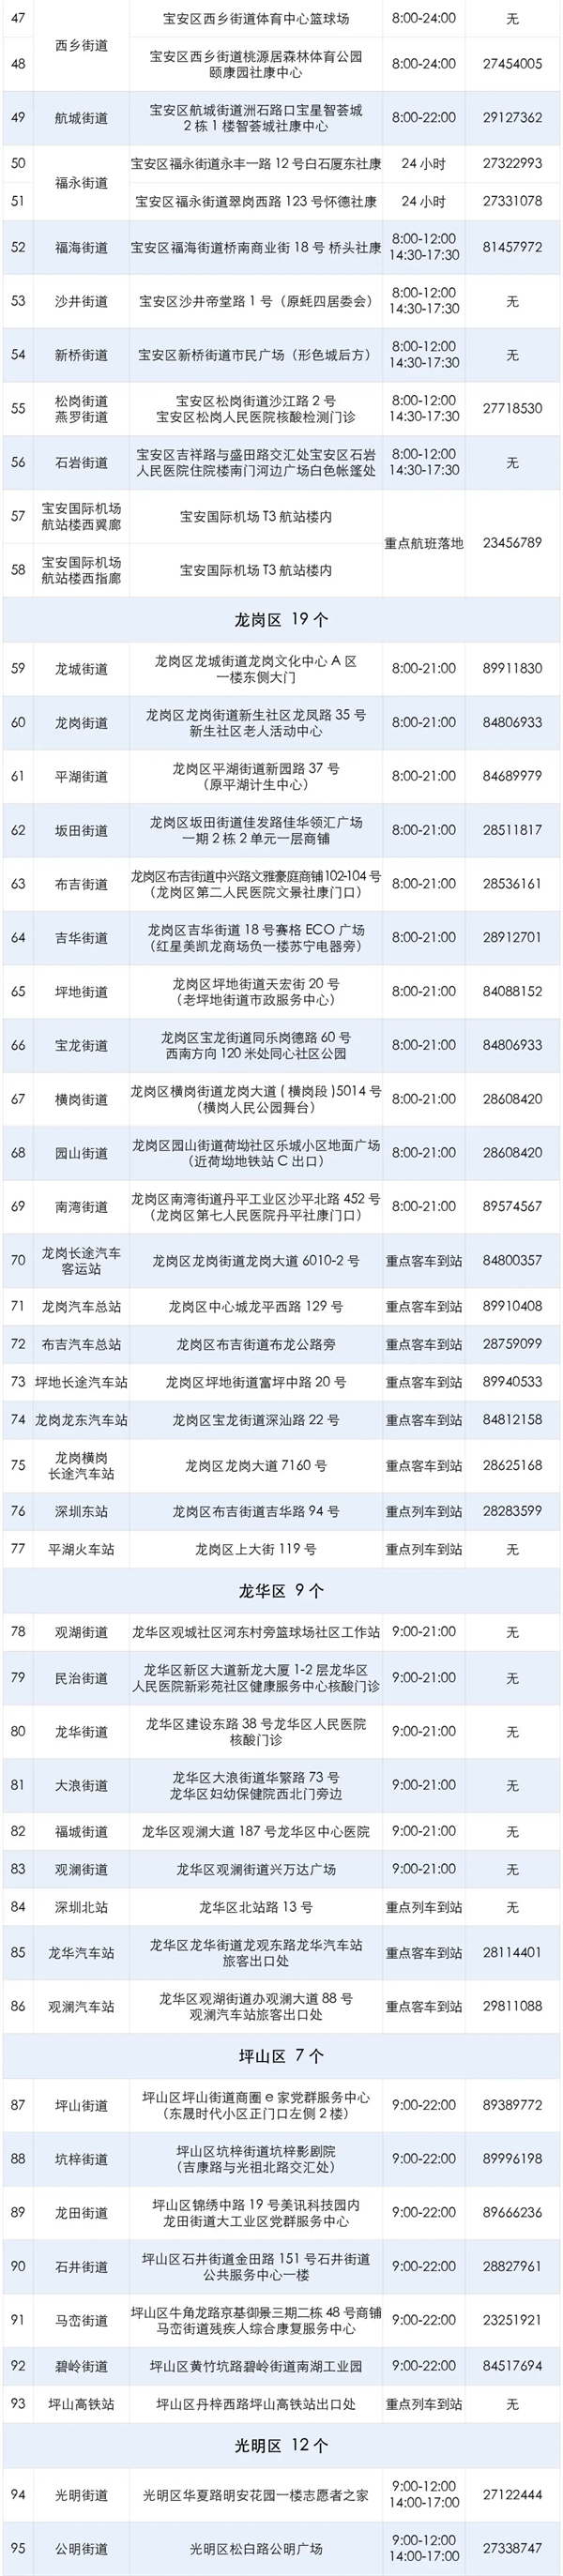 2021年8月份深圳市114个免费核酸检测点一览表